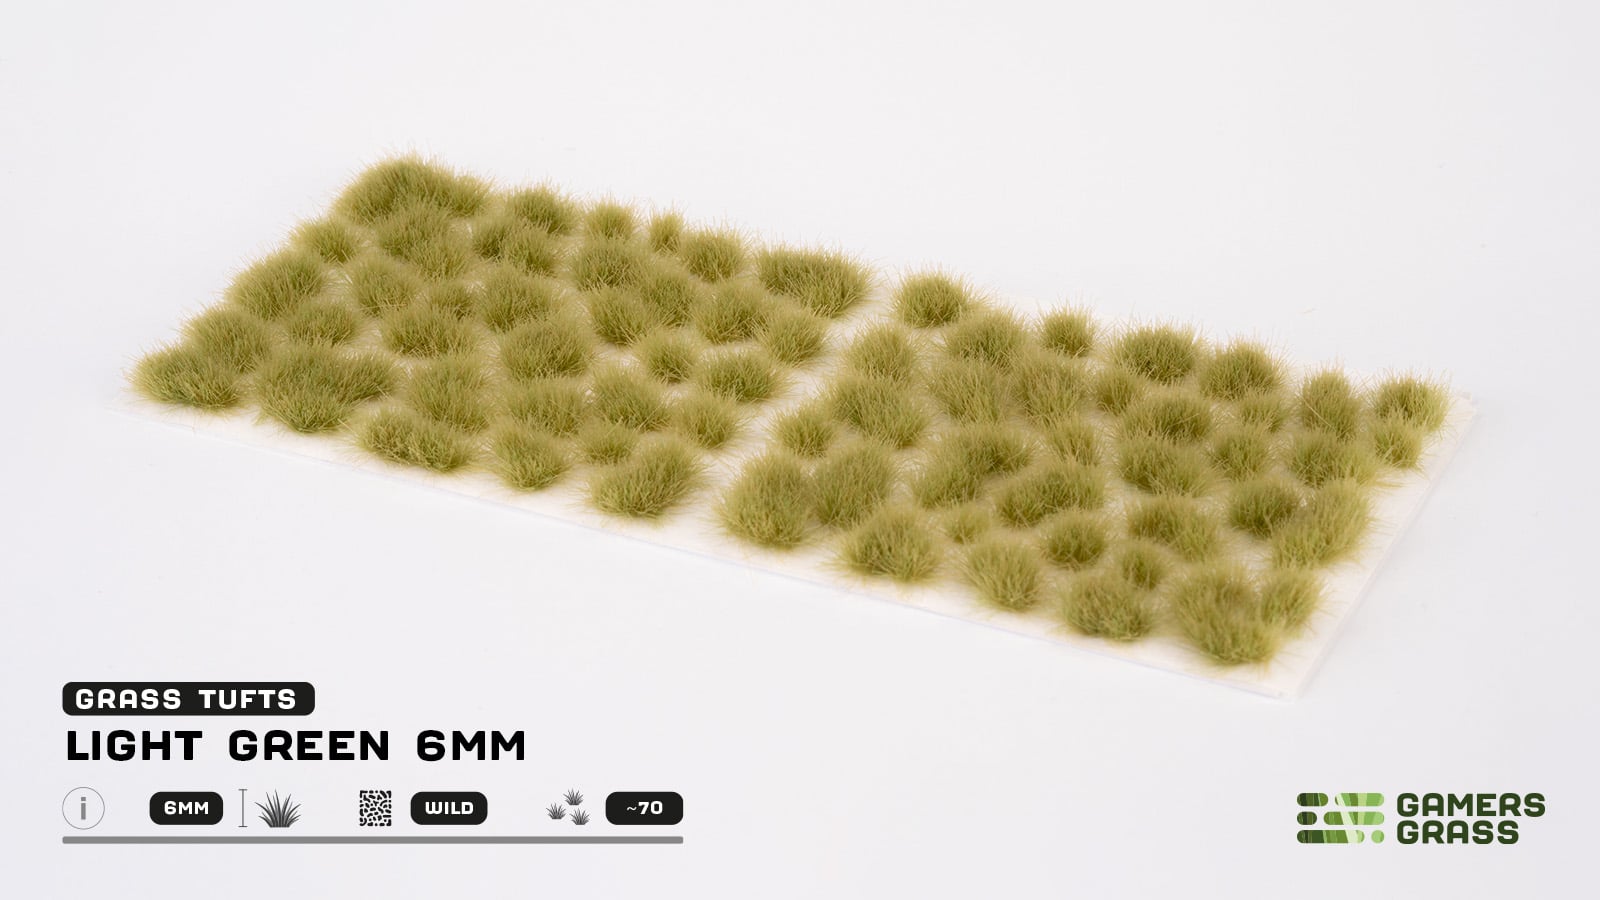 Light Green 6mm Tufts (Wild) - Gamers Grass - 0